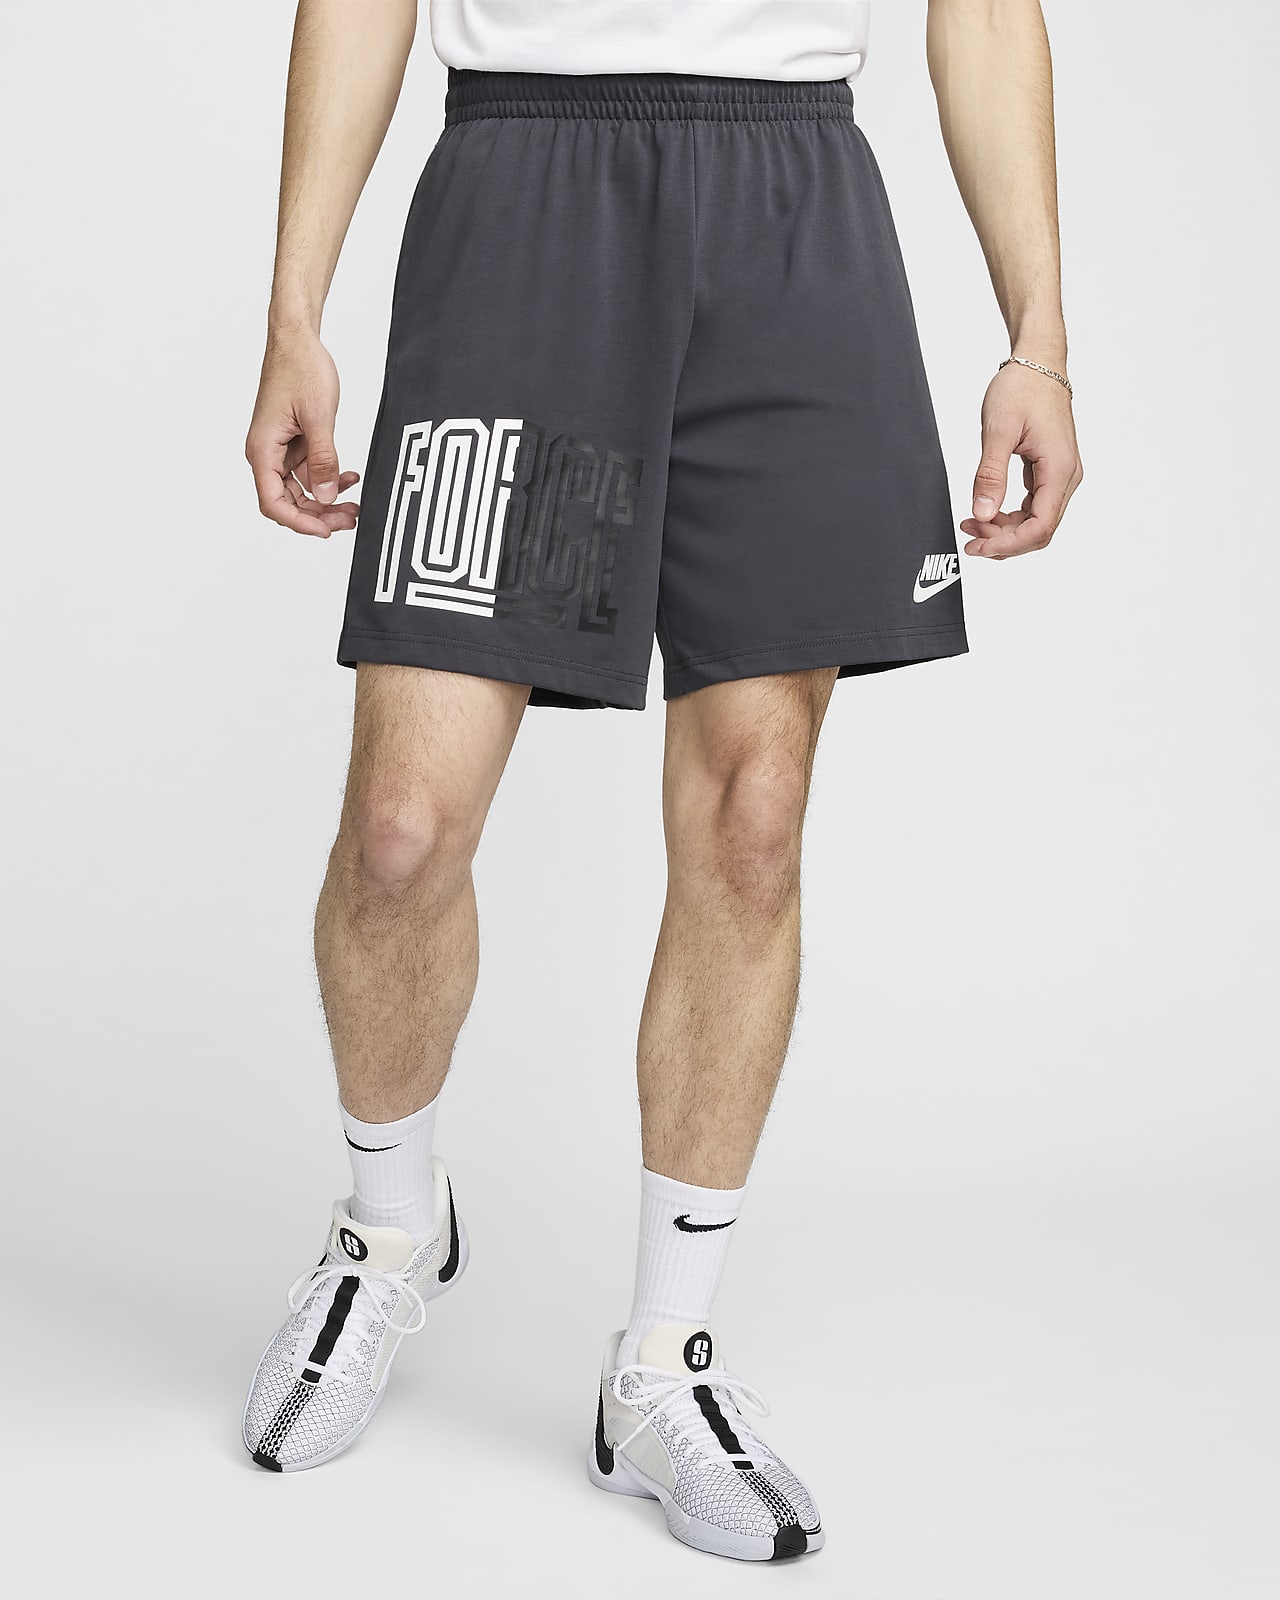 Pánské 20cm basketbalové kraťasy Dri-FIT Nike Starting 5